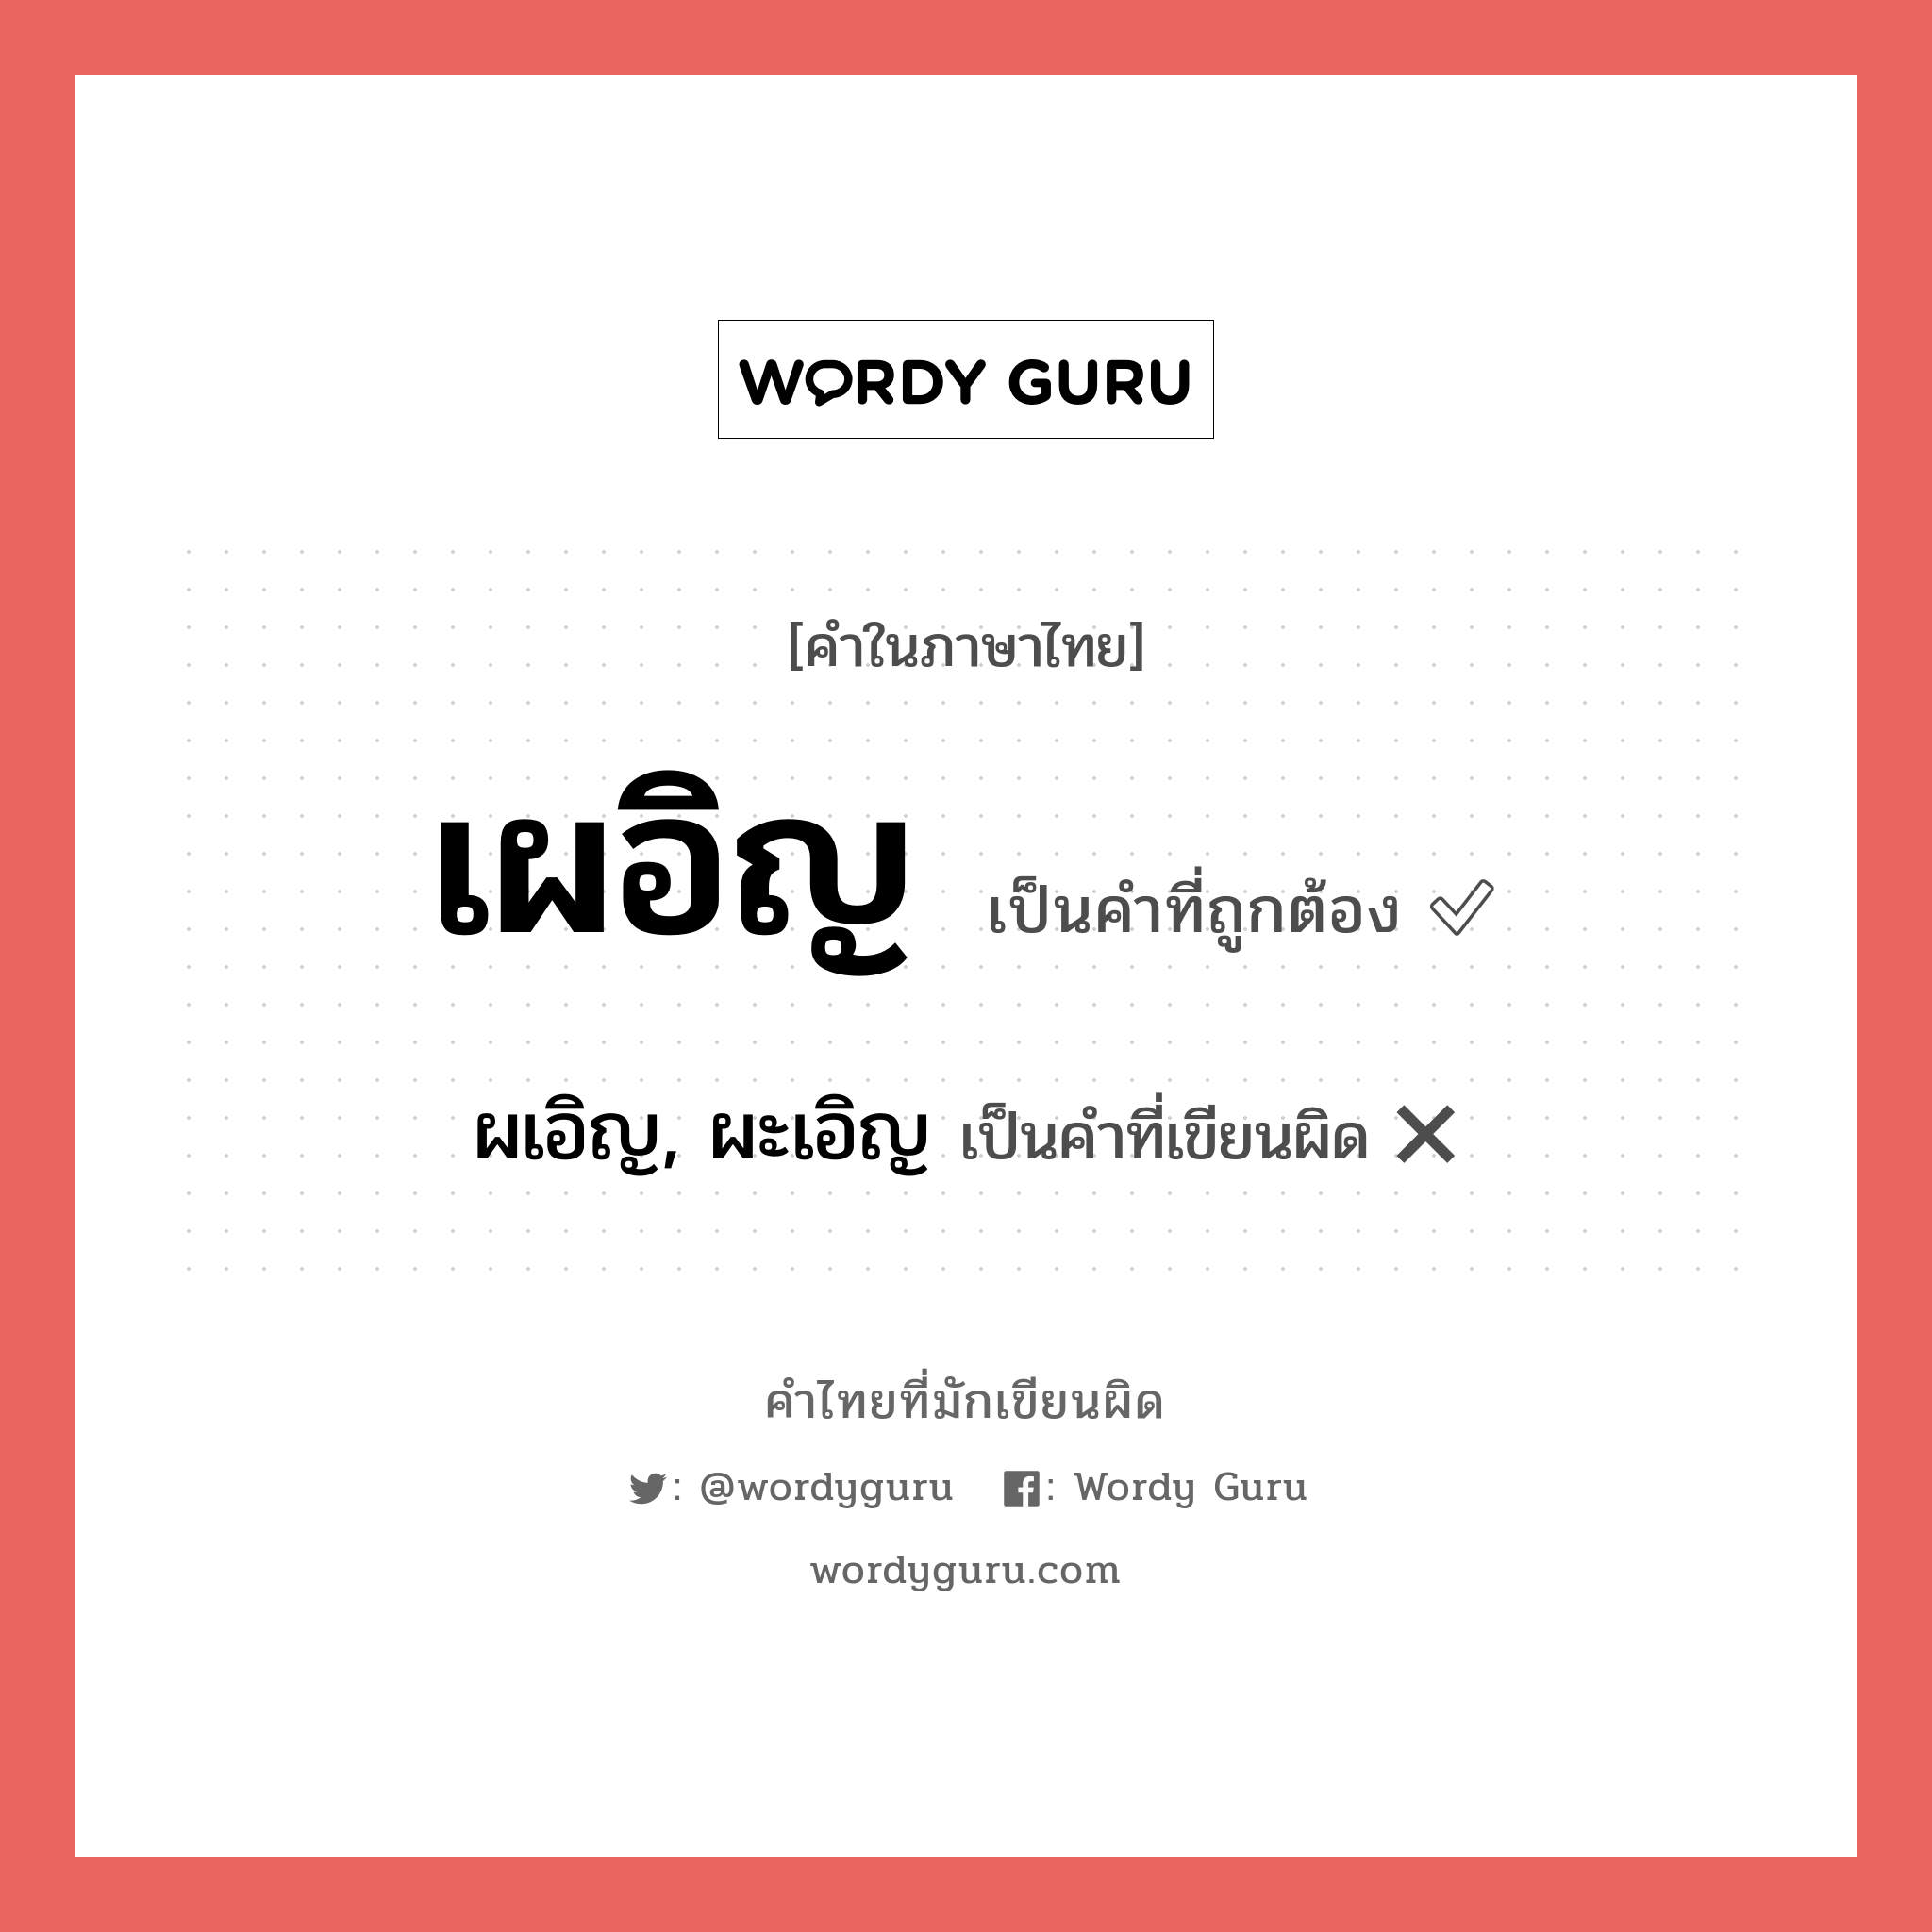 เผอิญ หรือ ผเอิญ, ผะเอิญ คำไหนเขียนถูก?, คำในภาษาไทยที่มักเขียนผิด เผอิญ คำที่ผิด ❌ ผเอิญ, ผะเอิญ